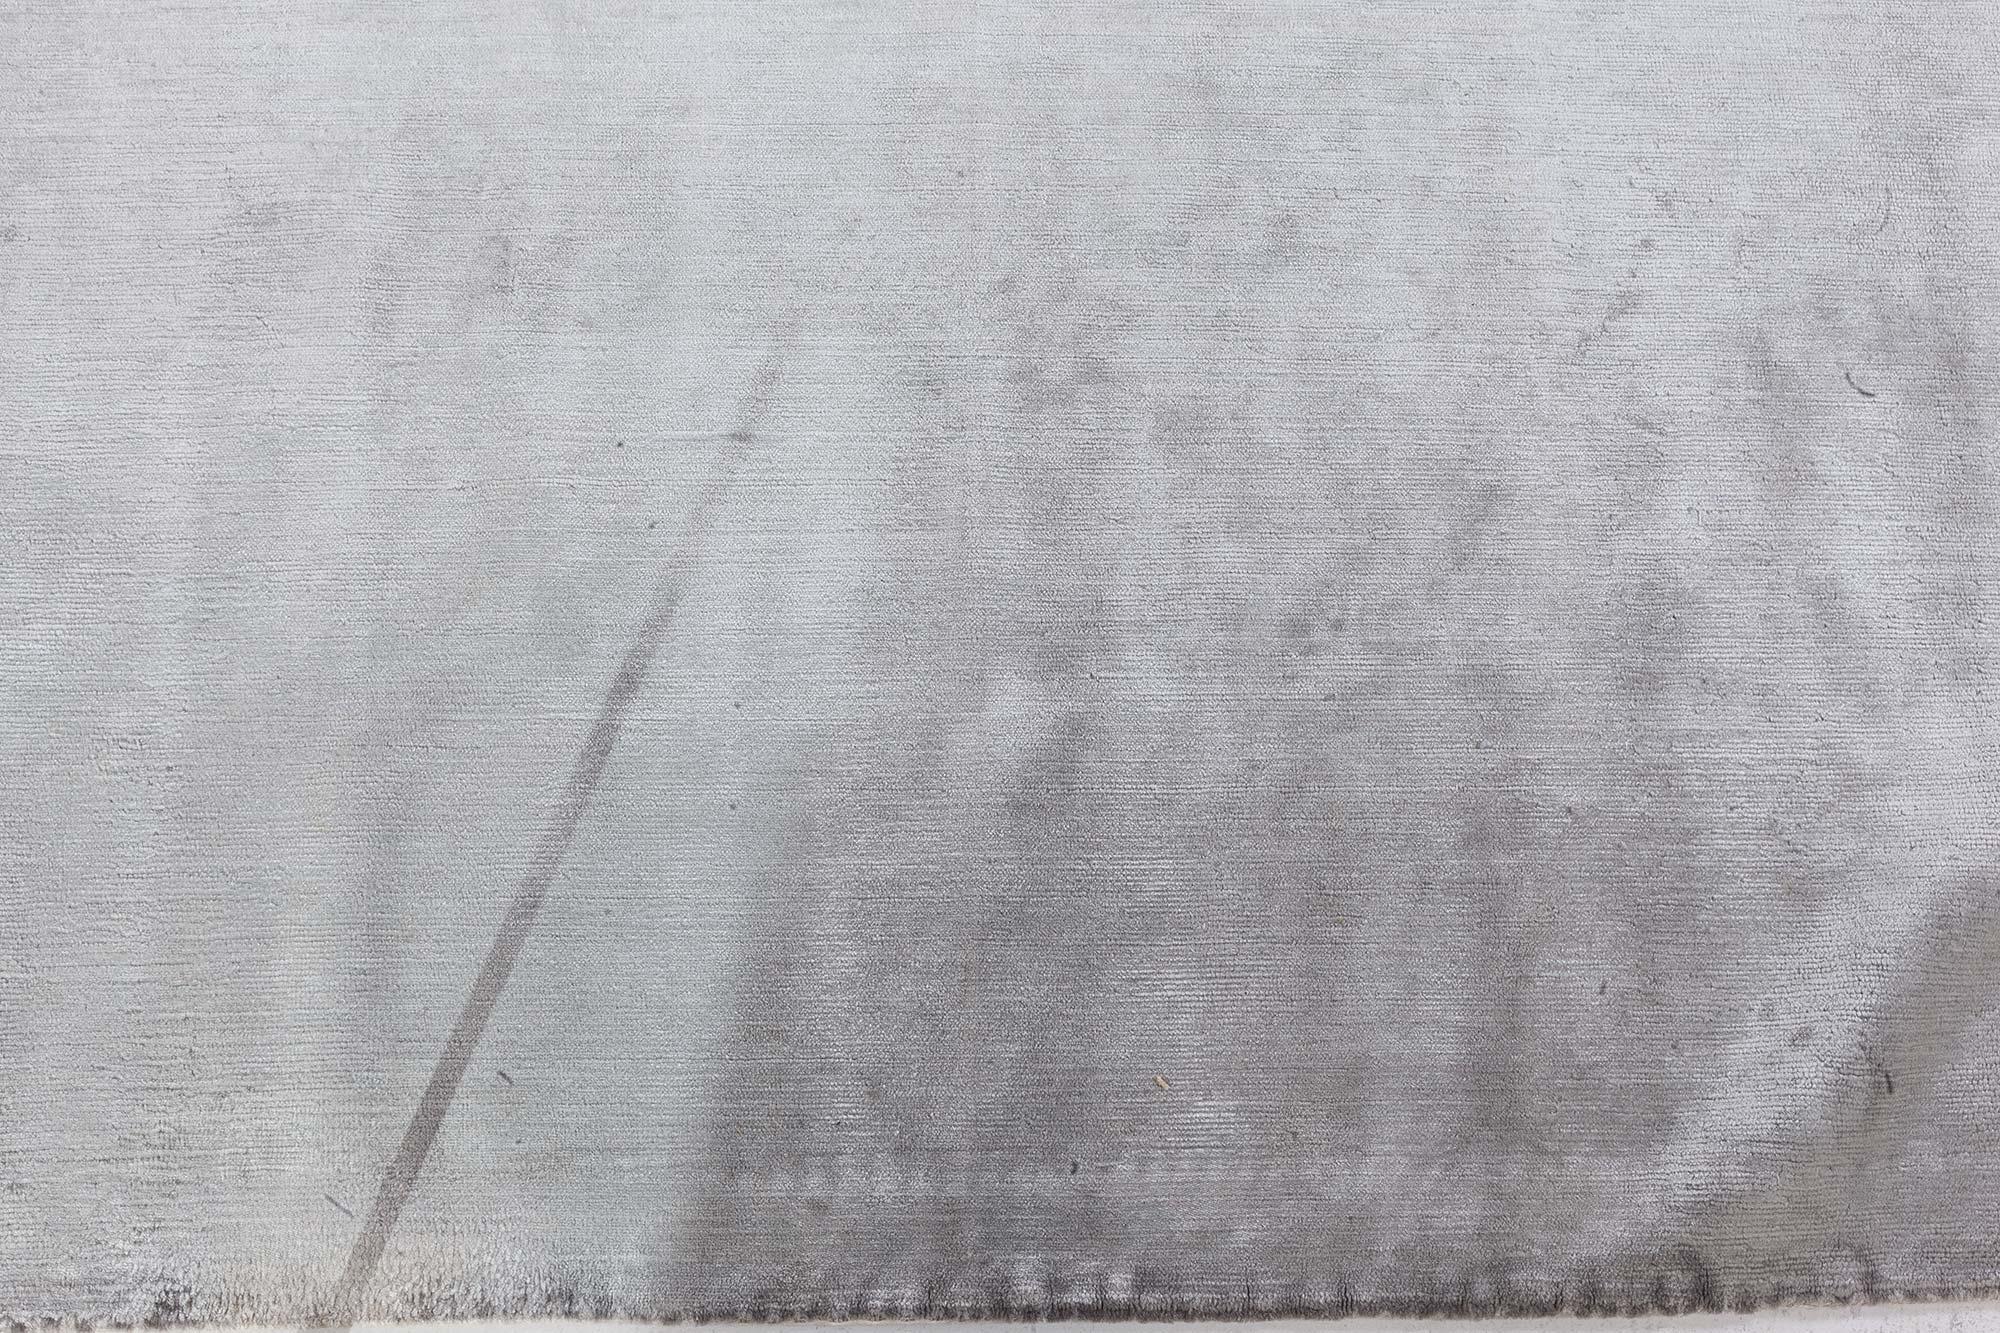 Contemporary Gray Silk Rug
Size: 5'0